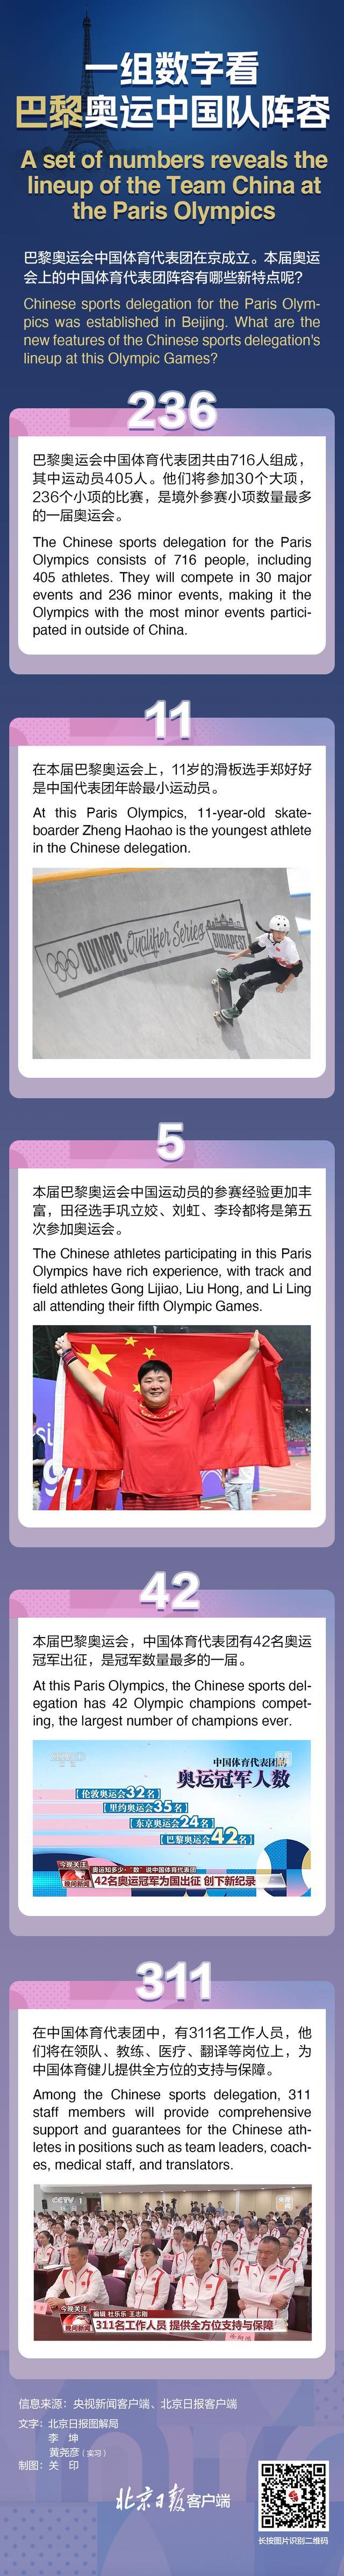 30秒速览巴黎奥运中国代表团阵容